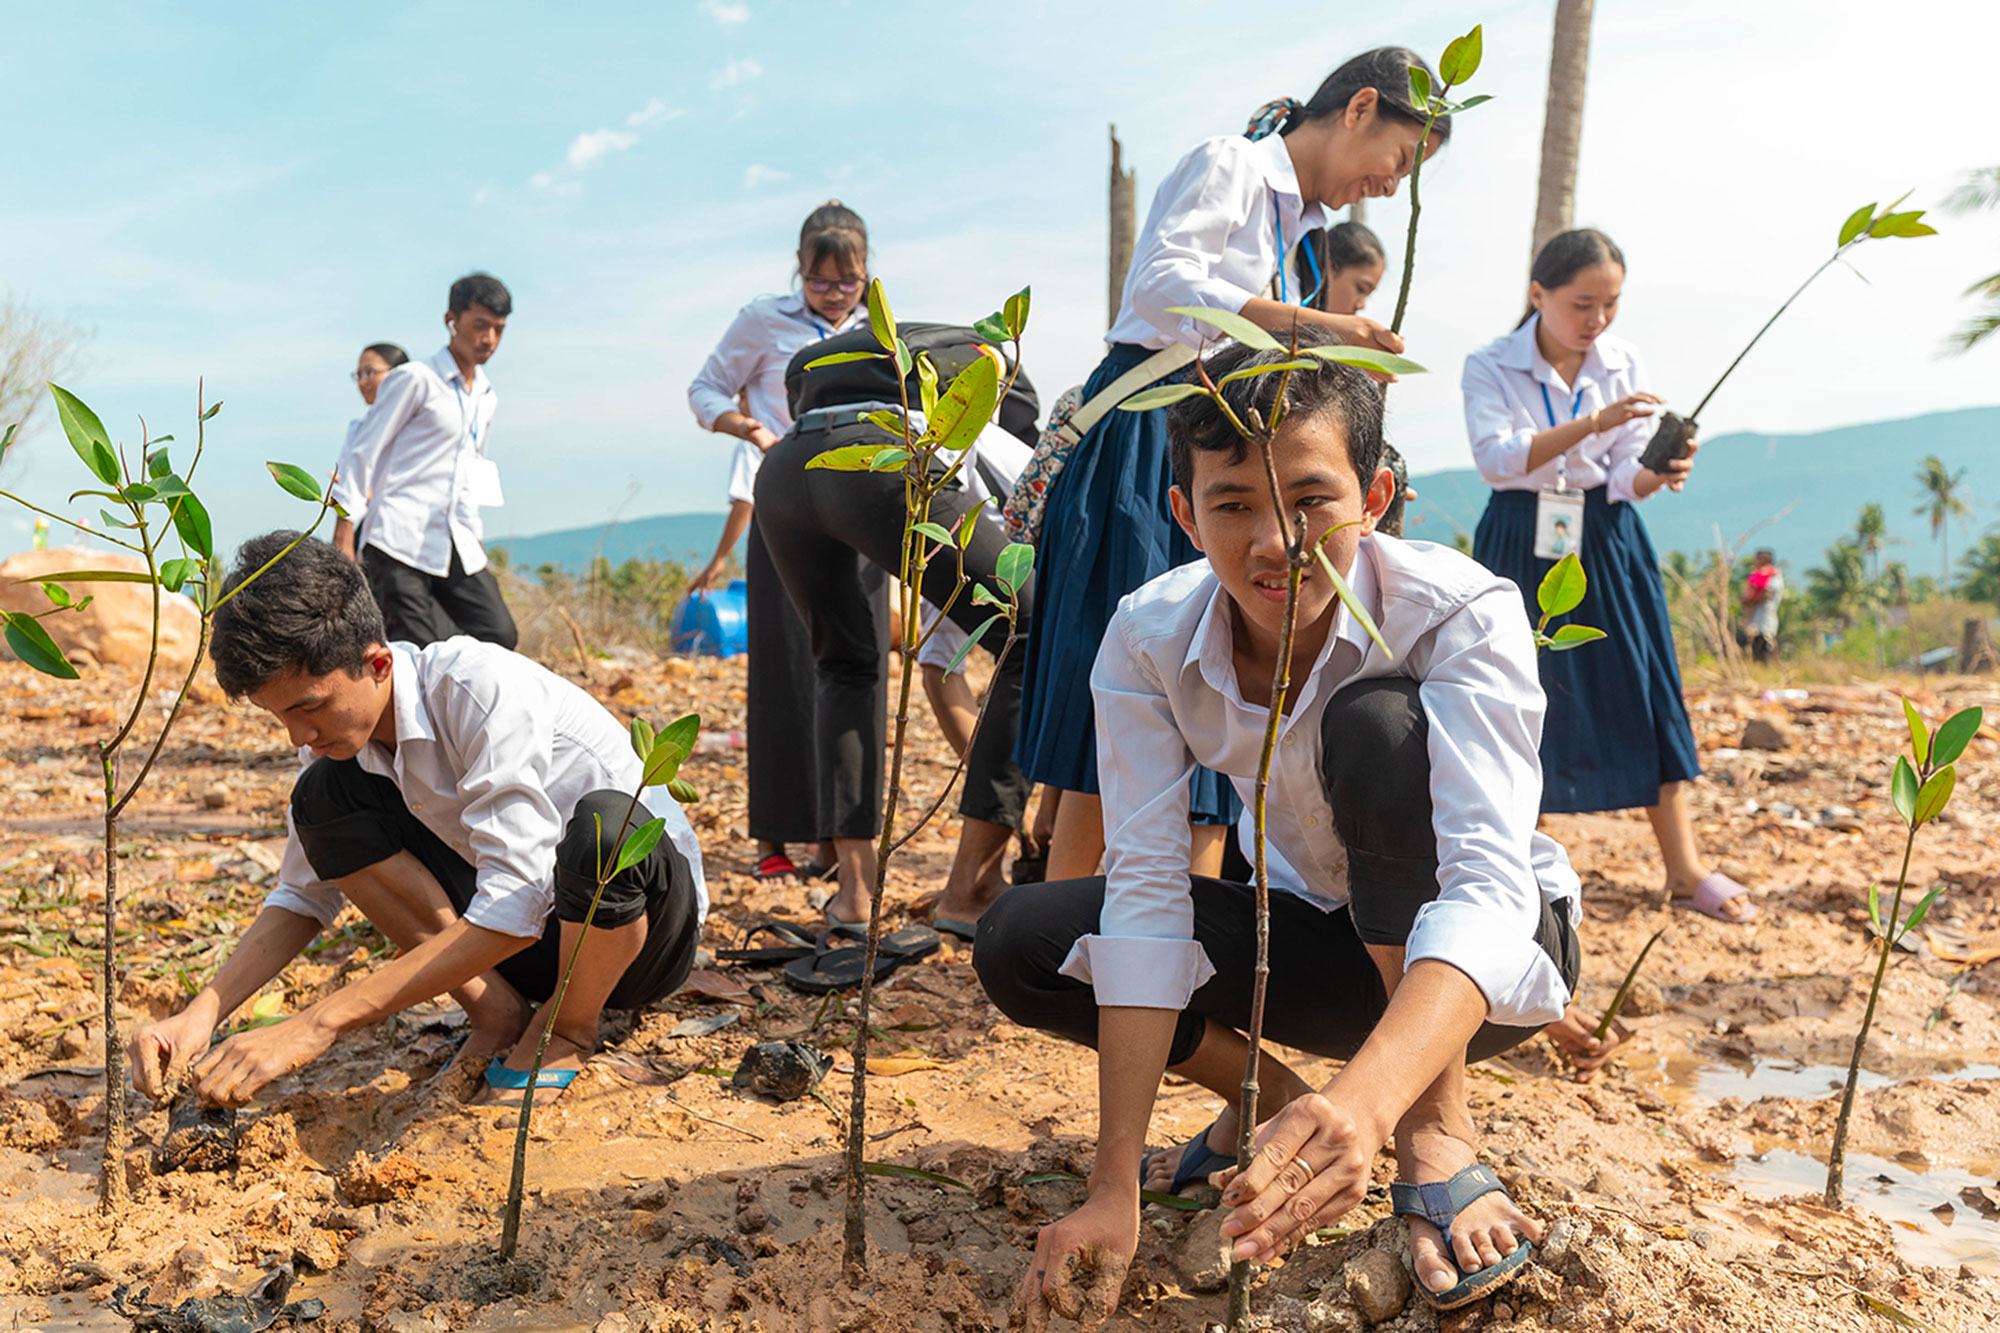 کمبوڈیا میں طلباء آبی گزرگاہوں کے ساتھ شجر کاری کر رہے ہیں تاکہ نمدار زمین پر جنگلوں کی بحالی ممکن ہو سکے۔